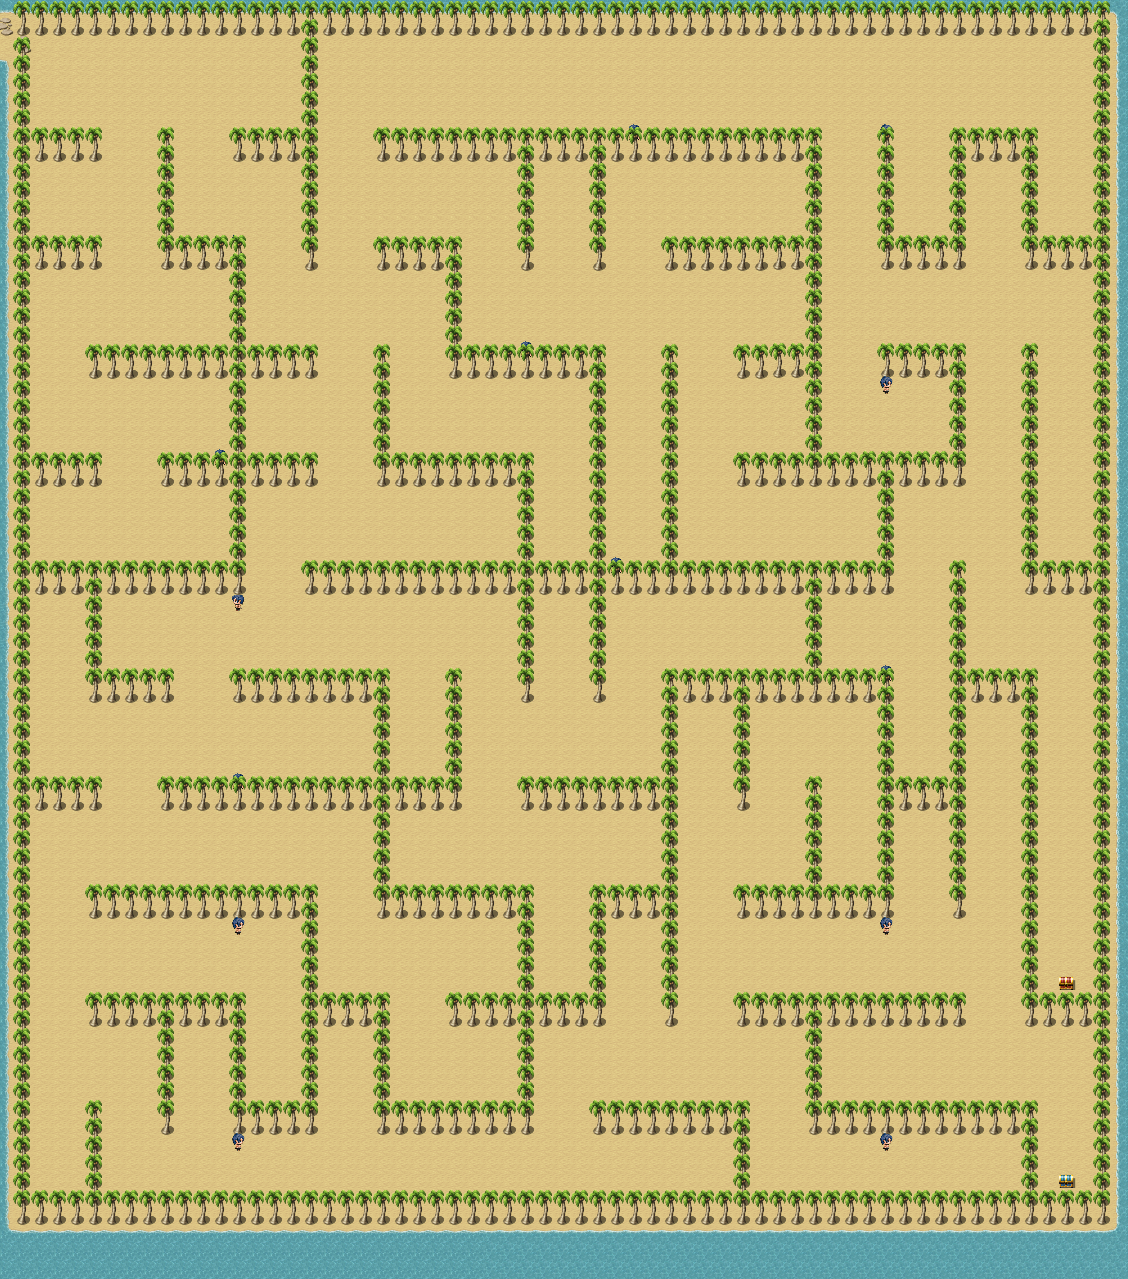 DI Maze Map 2.png